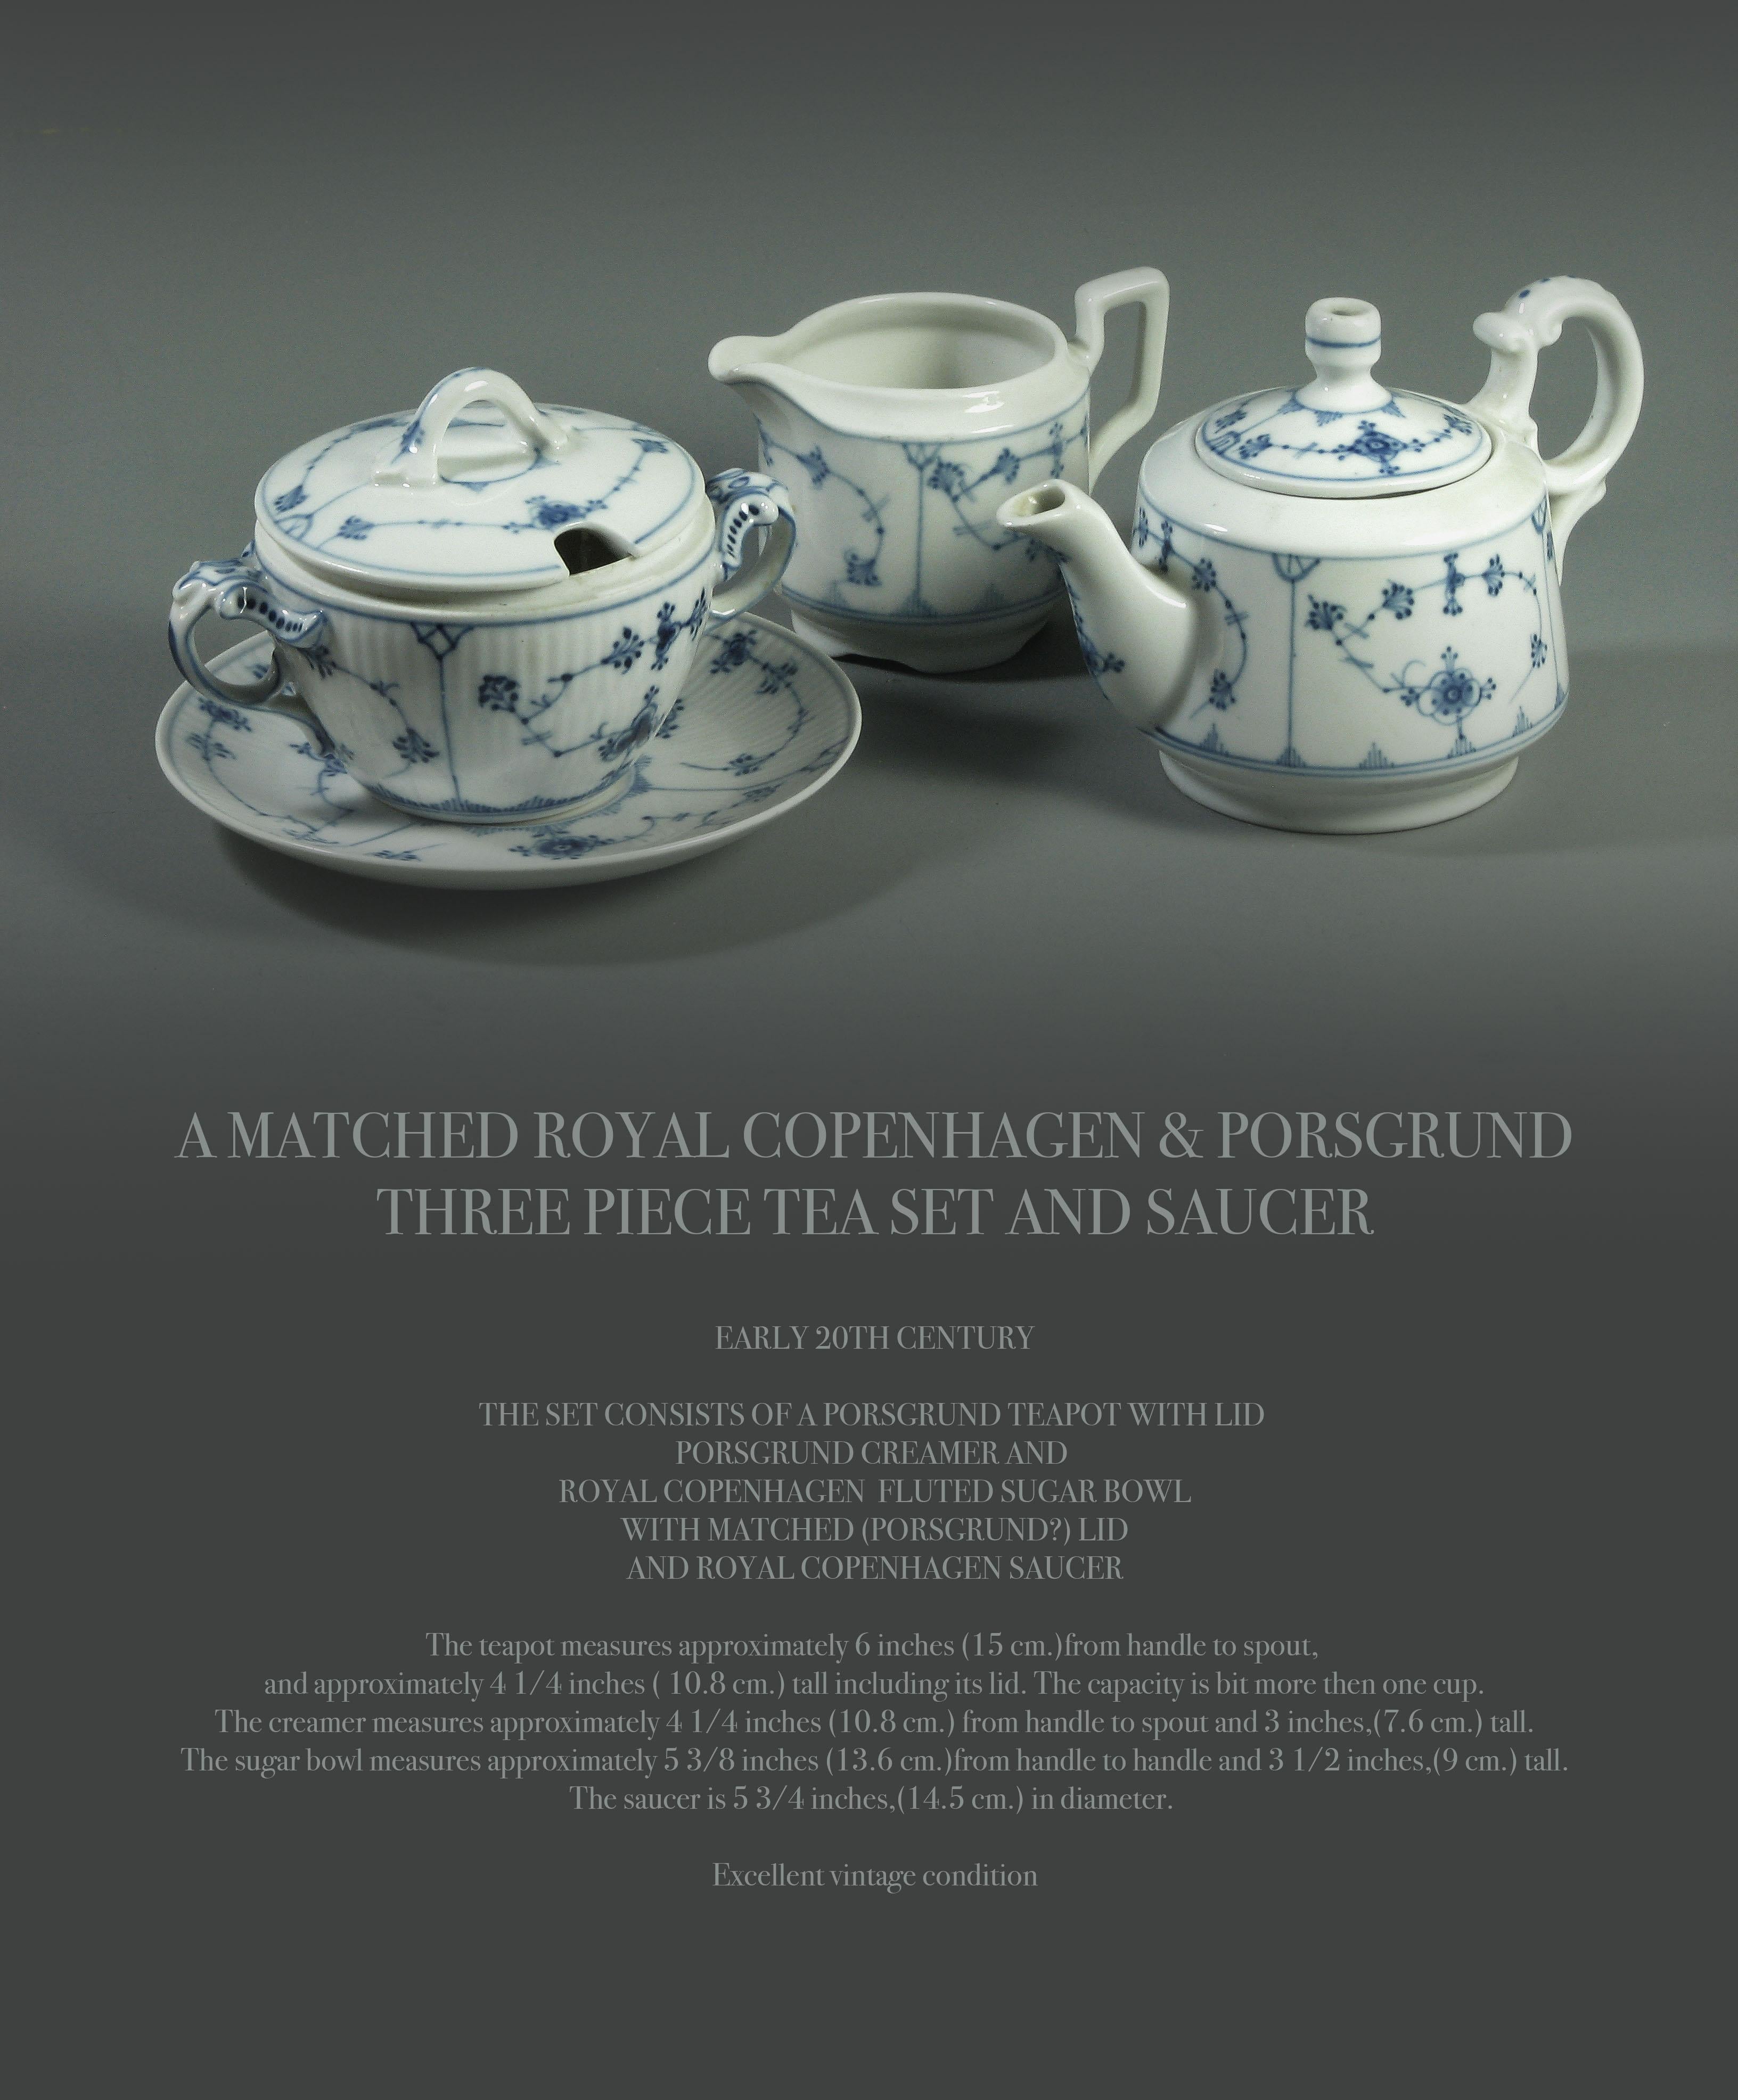 Ein abgestimmtes Royal Copenhagen & Porsgrund
dreiteiliges Teeservice mit Untertasse.

Anfang des 20. Jahrhunderts.

Das Set besteht aus einer porsgrund Teekanne mit Deckel porsgrund Milchkännchen und
royal copenhagen kannelierte zuckerdose
mit